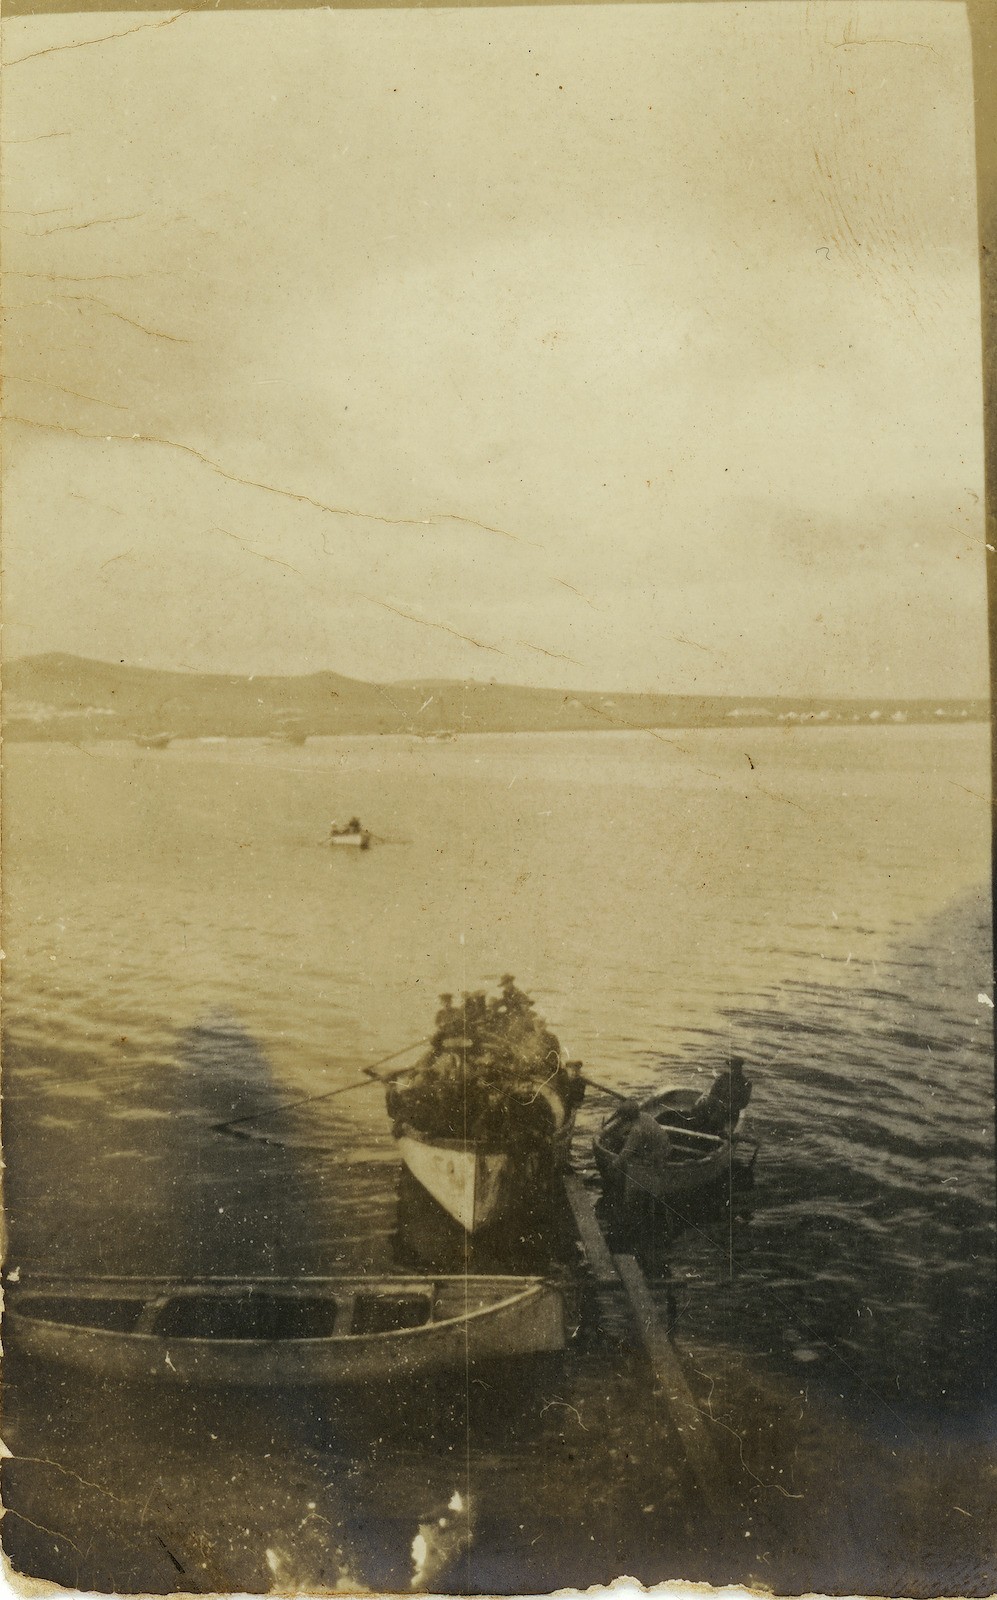 Australian troops rowing across the water in landing boats, 1915